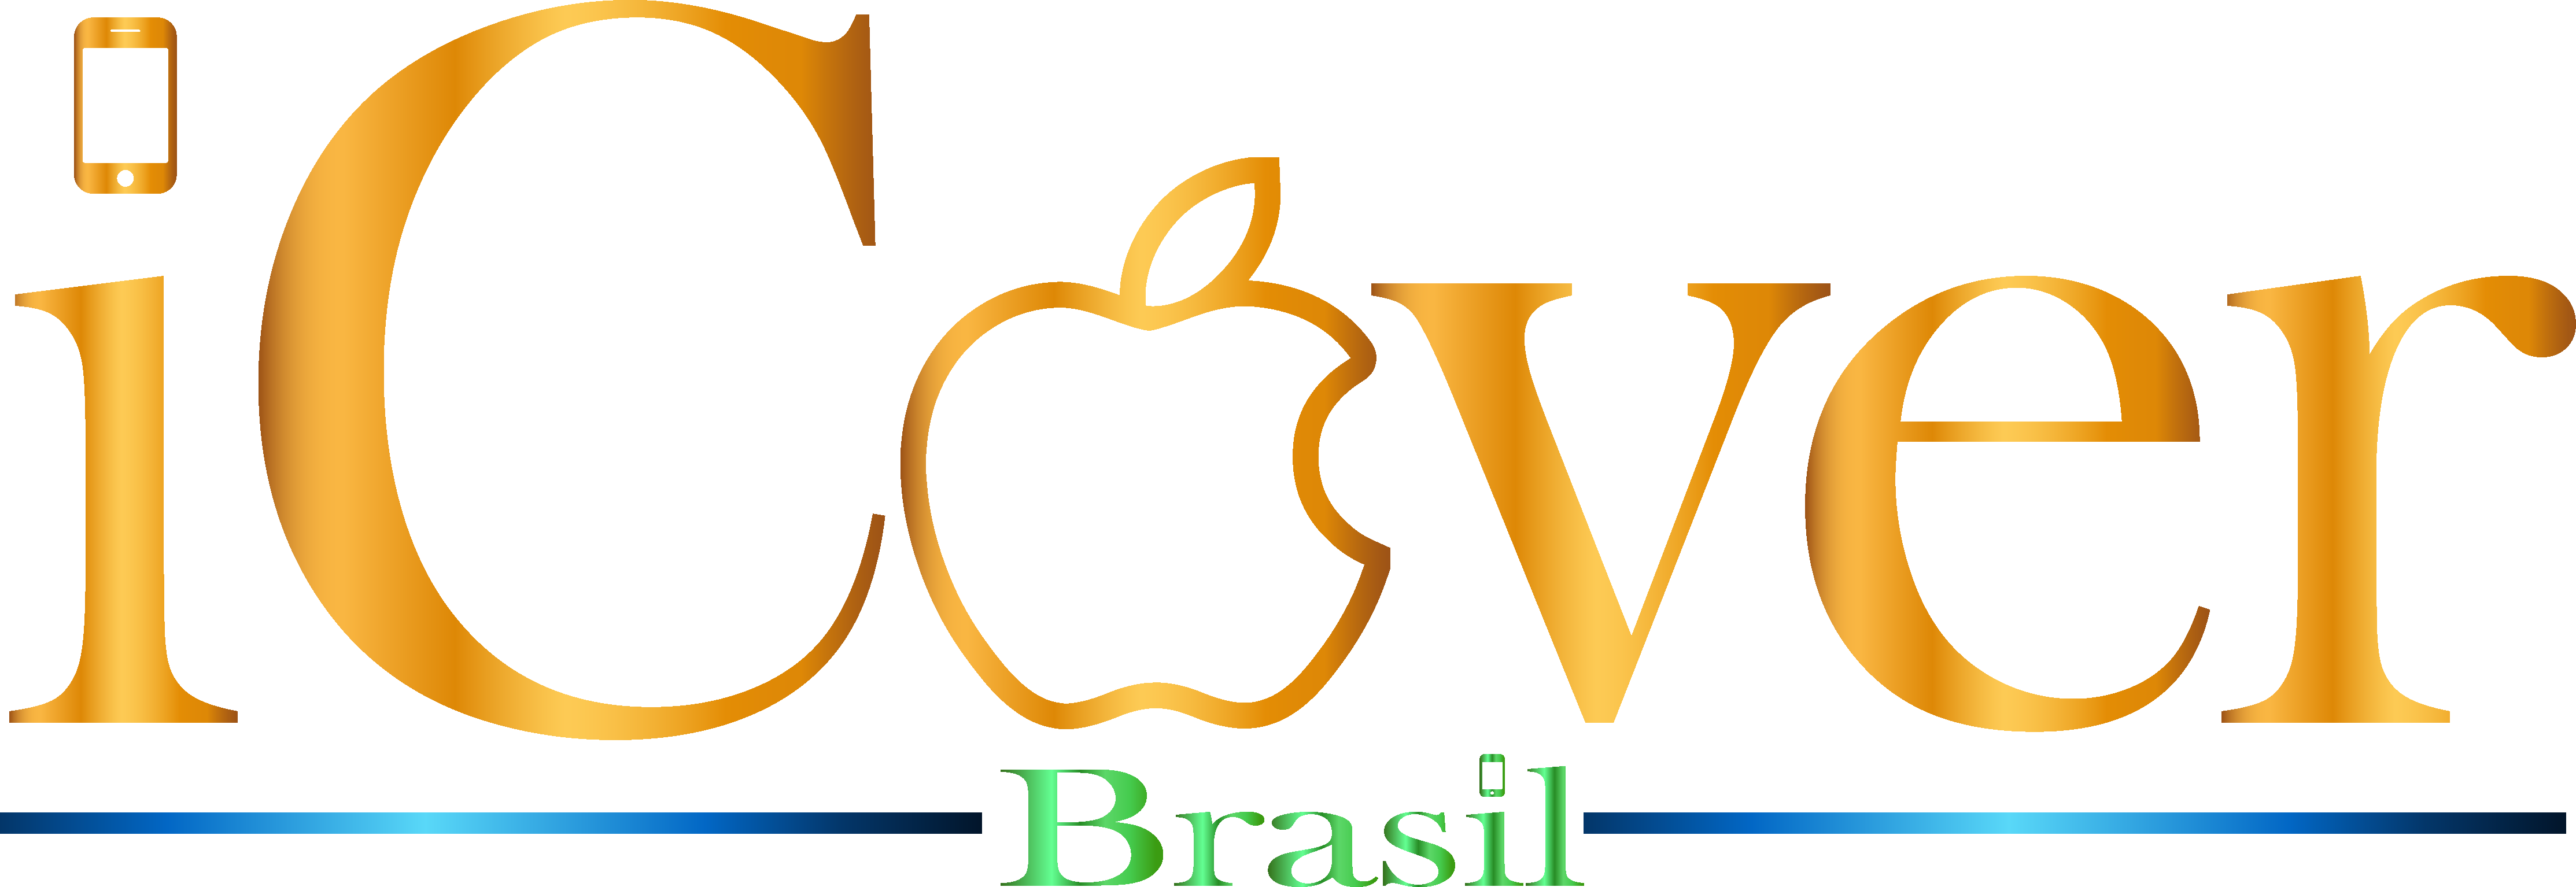 ICover Brasil